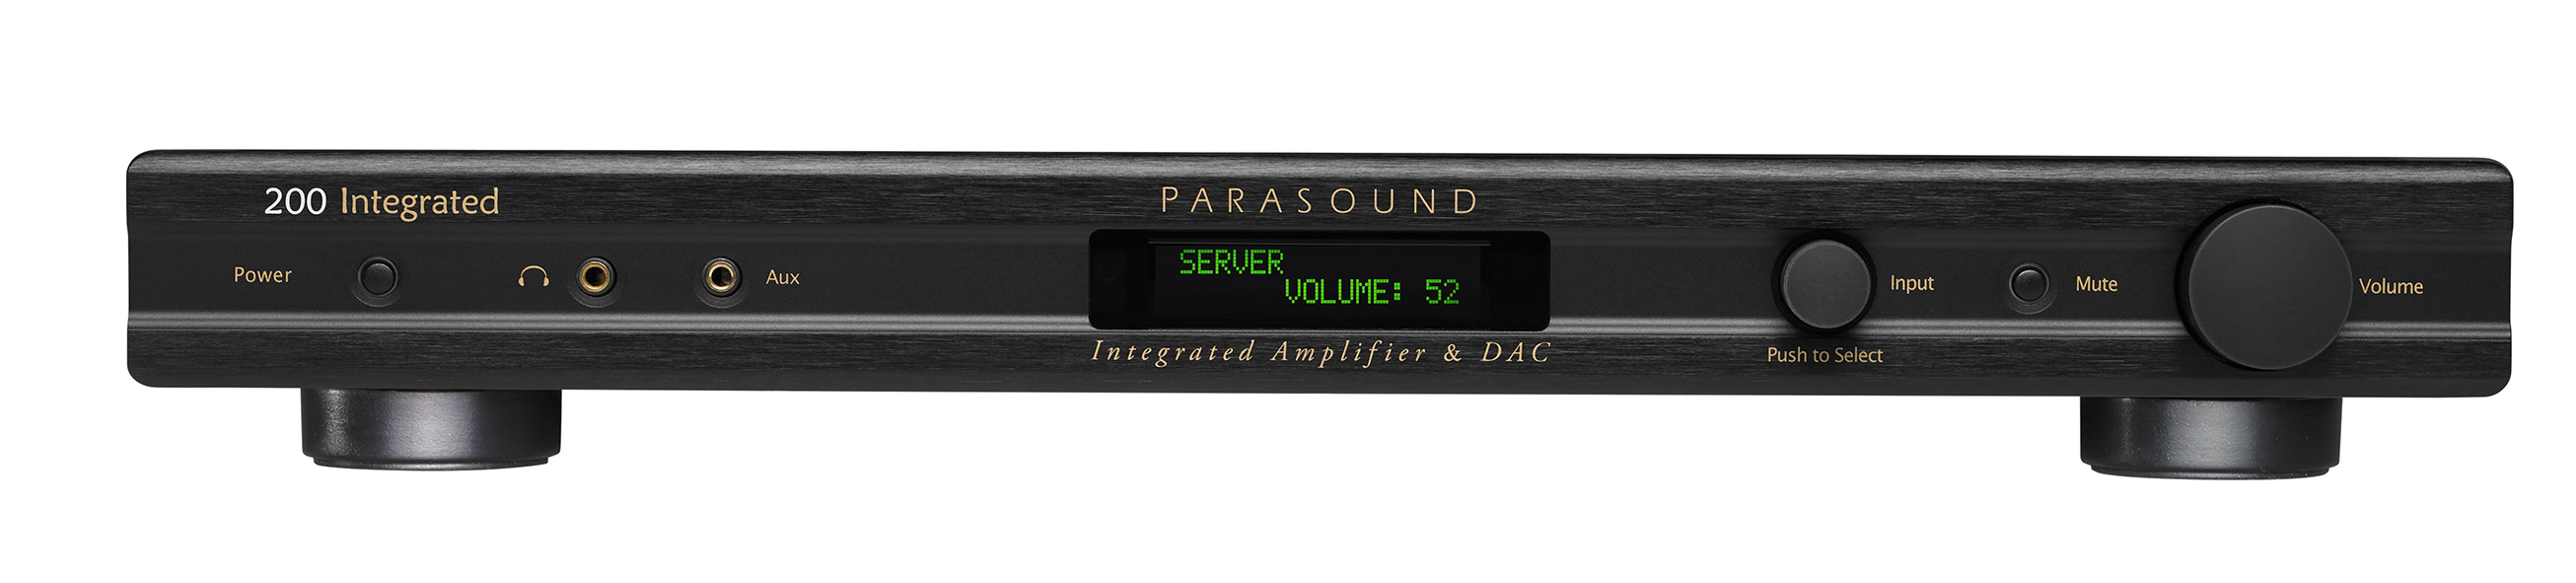 Интегральные стереоусилители Parasound 200 Integrated интегральные стереоусилители parasound 200 integrated